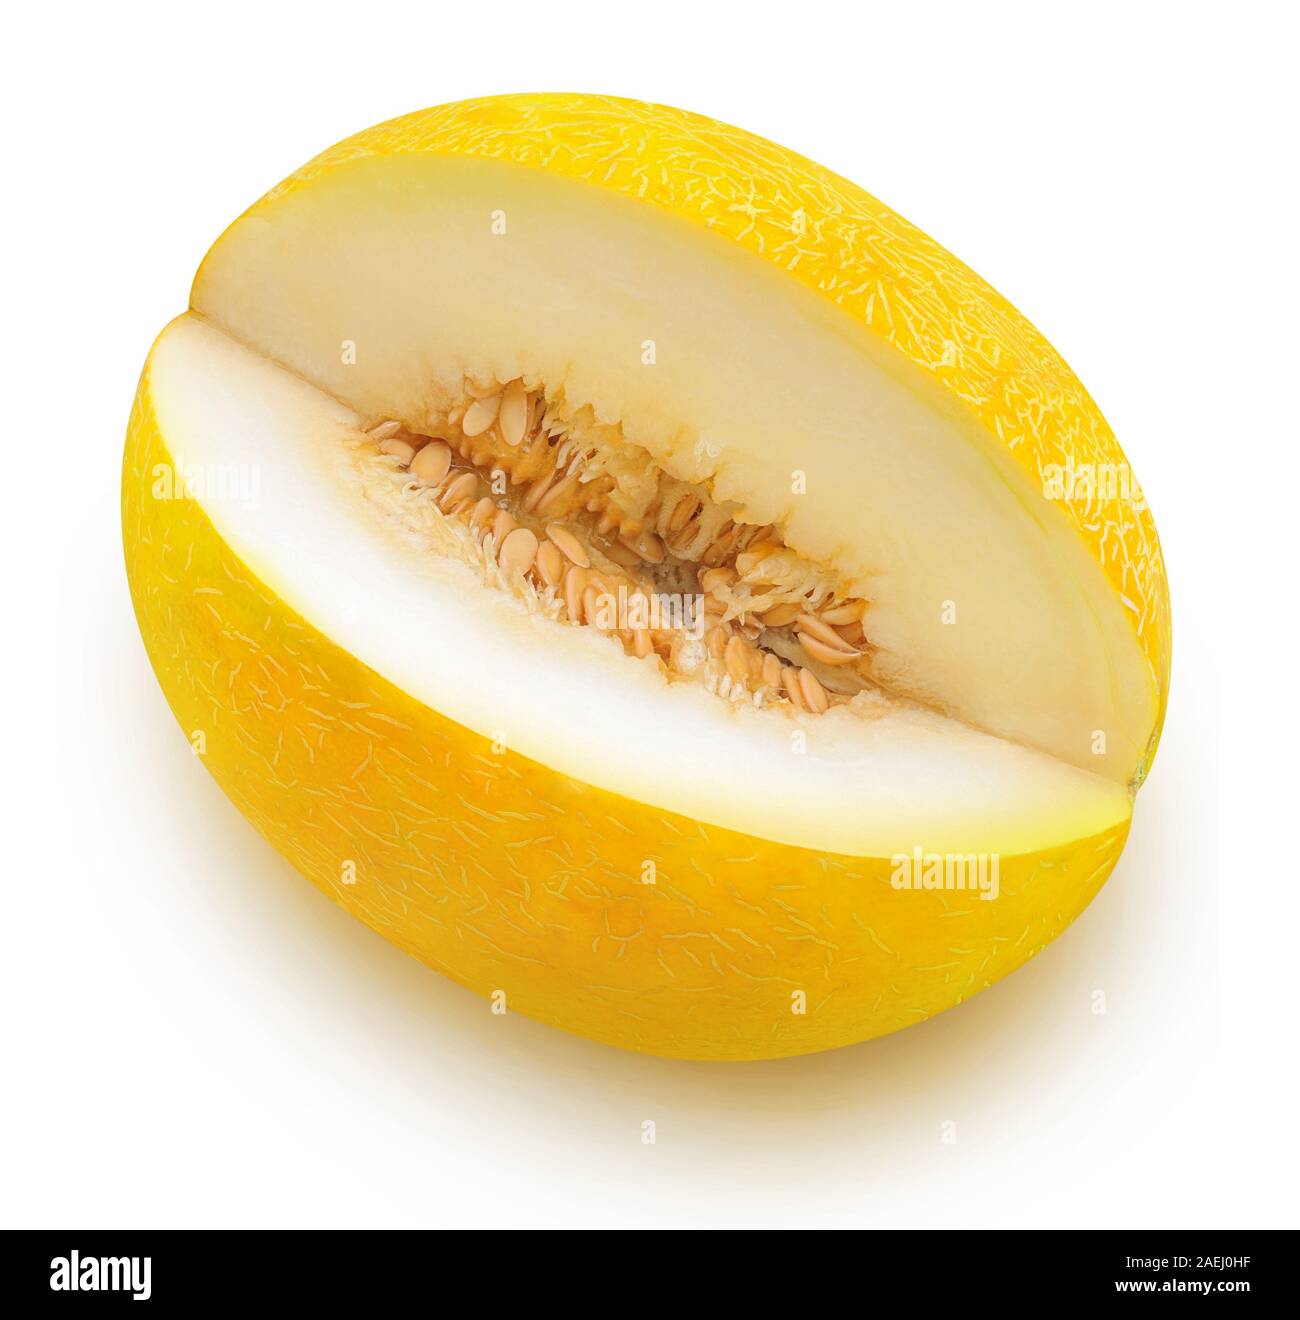 Il melone di isolati. Melone giallo con frutta tagliata slice isolato su sfondo bianco con percorso di clipping, ad alto angolo di visione Foto Stock